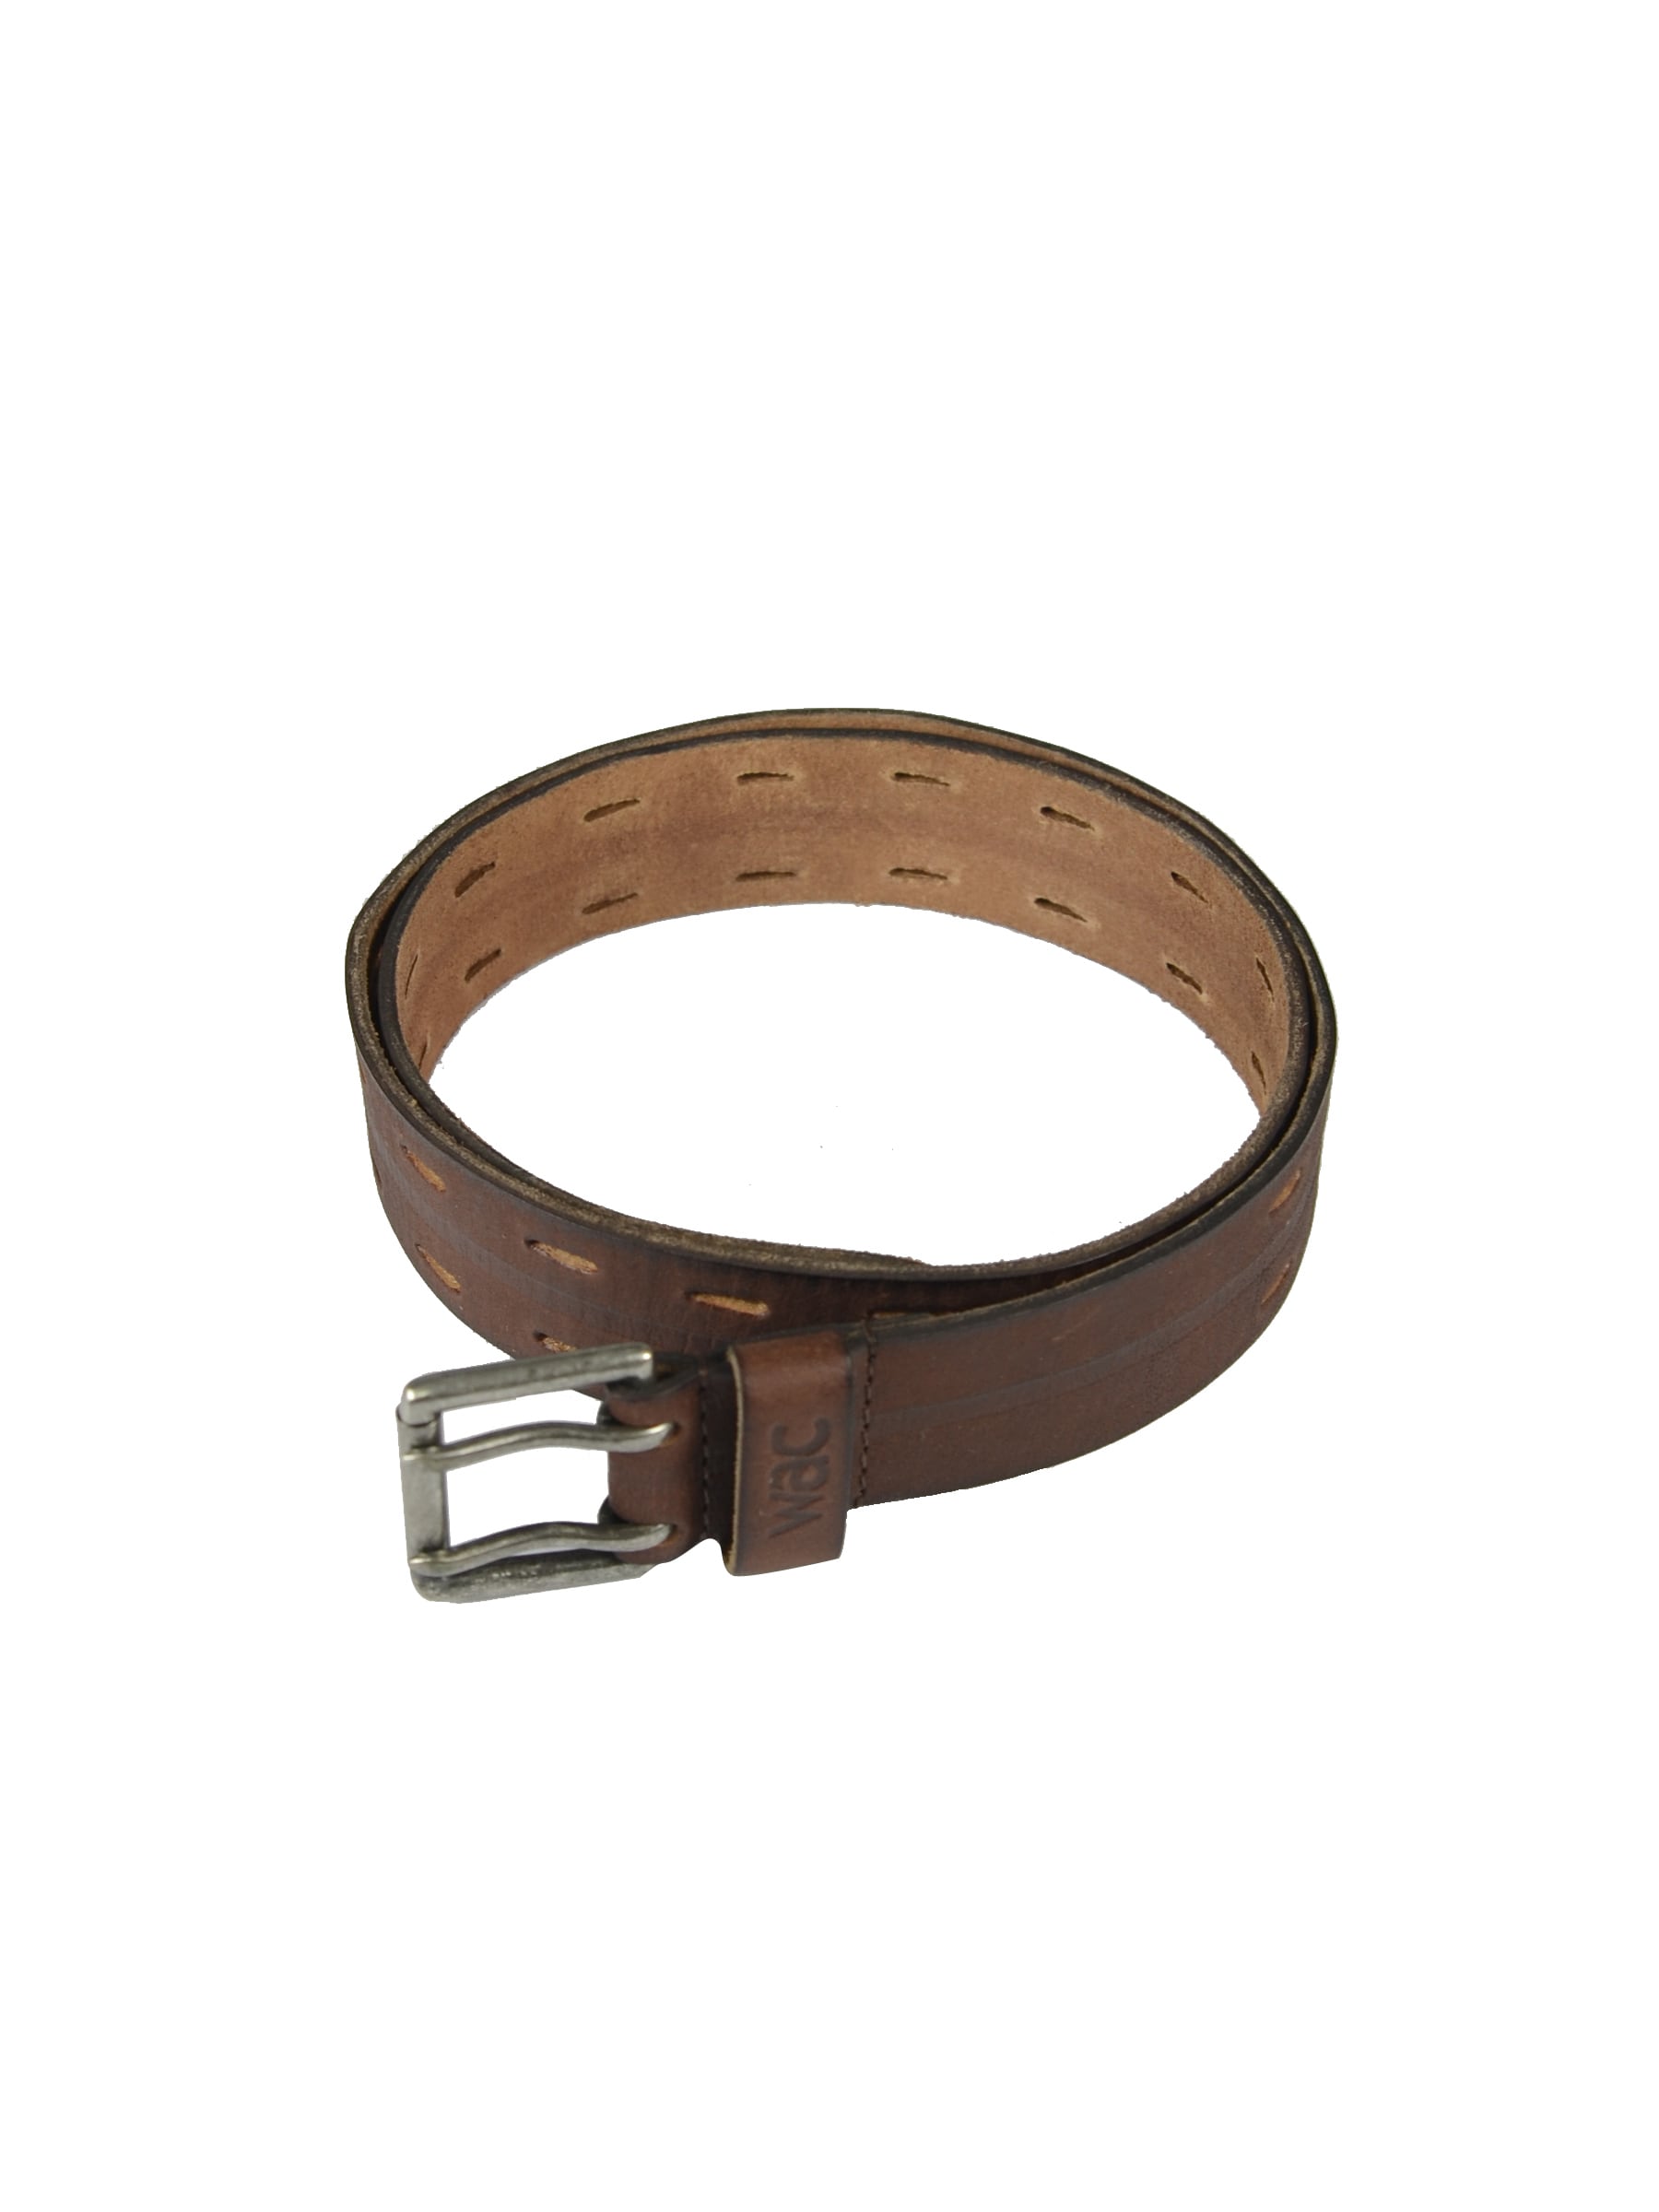 Wrangler Men Brown Leather Belt